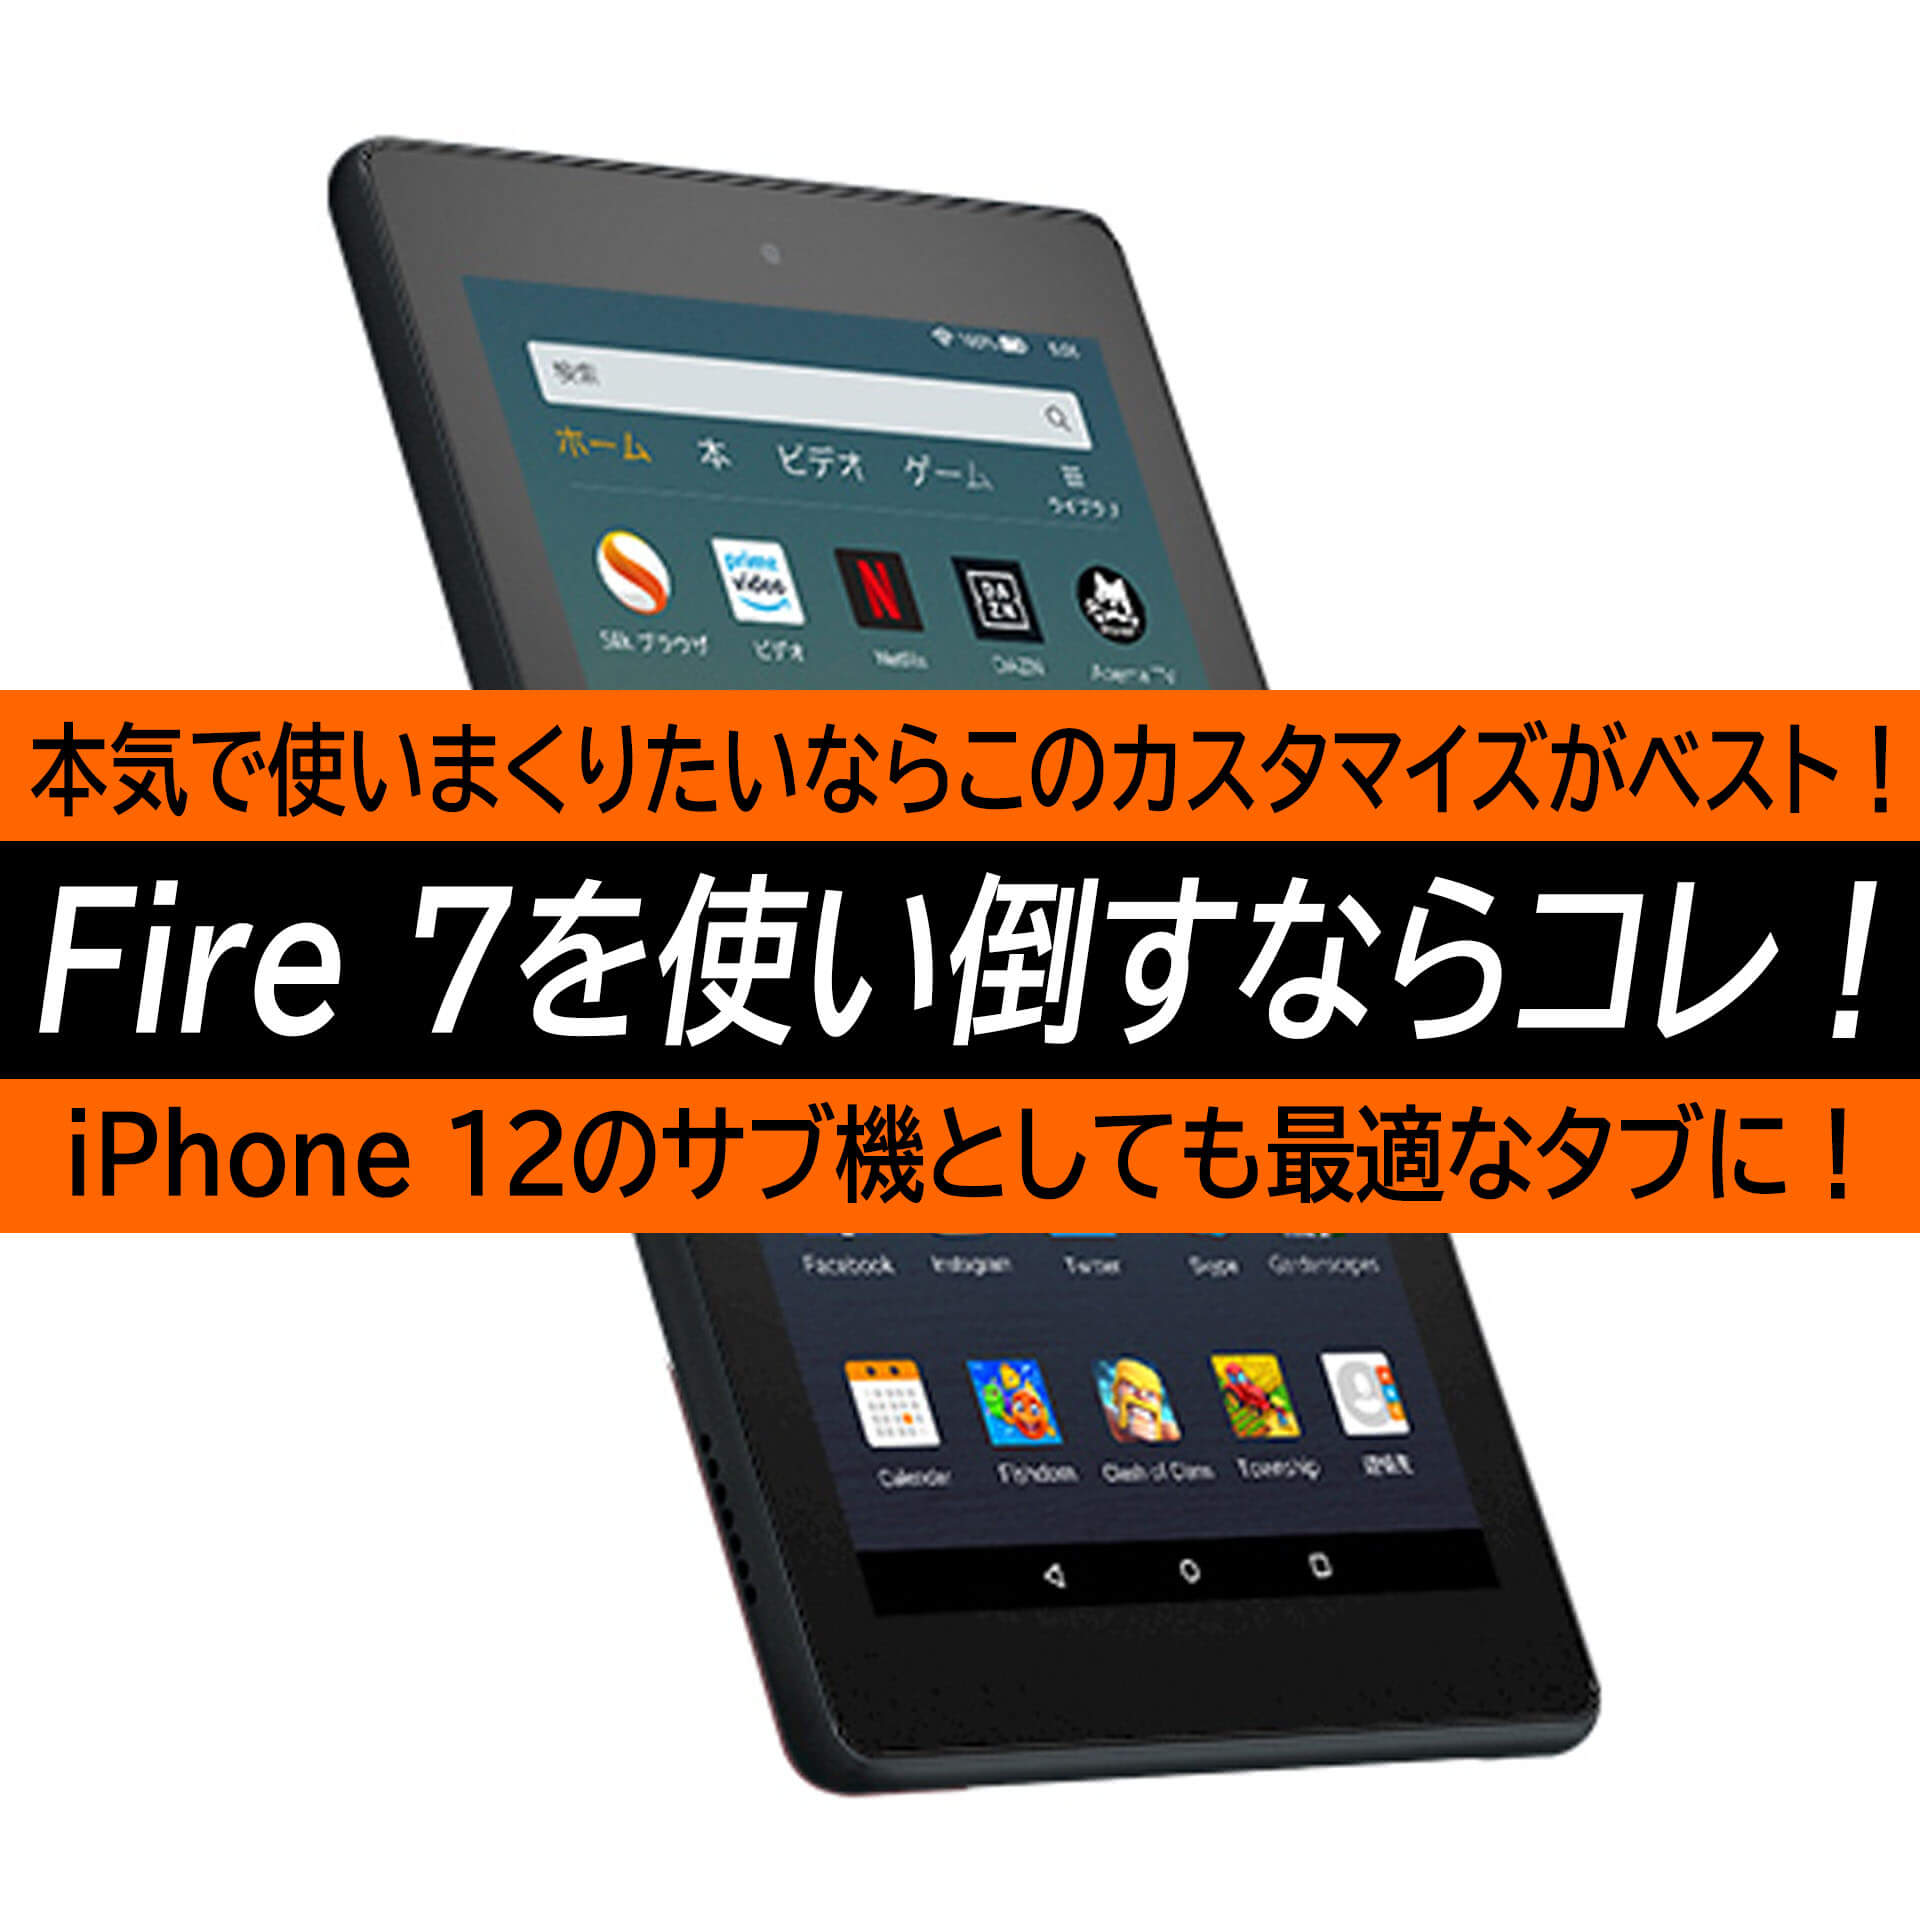 Iphone 12との2台持ちにも最適なタブレットamazon Fire 7 使い倒すならこの最強カスタマイズがお勧め